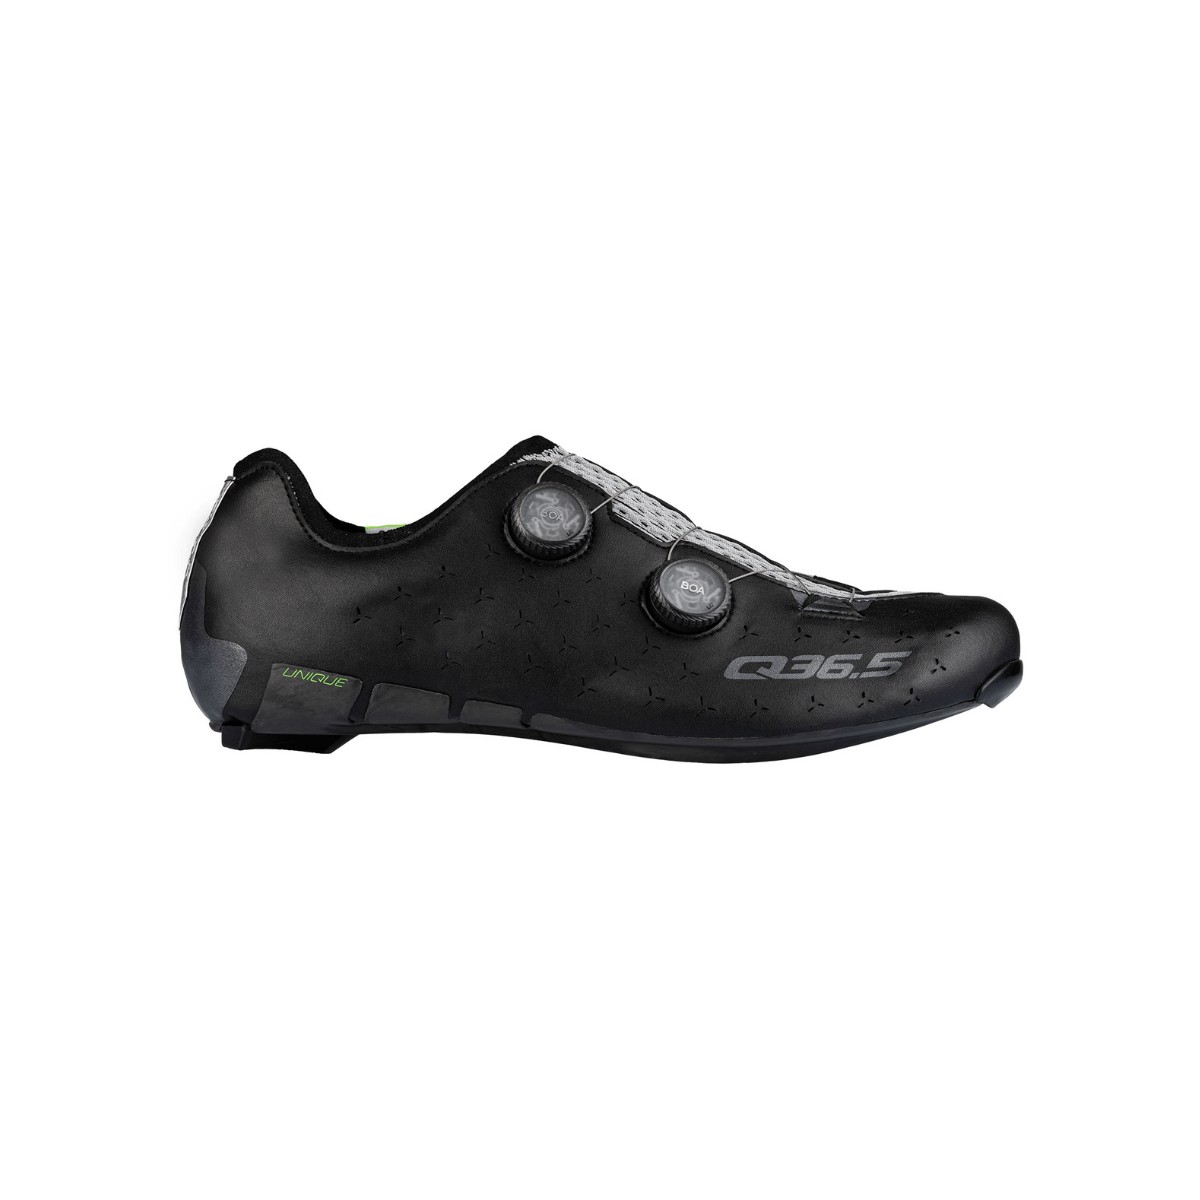 Photos - Cycling Shoes Q36.5 Unique Road Shoes Black, Size 44 - EUR 300.2.44